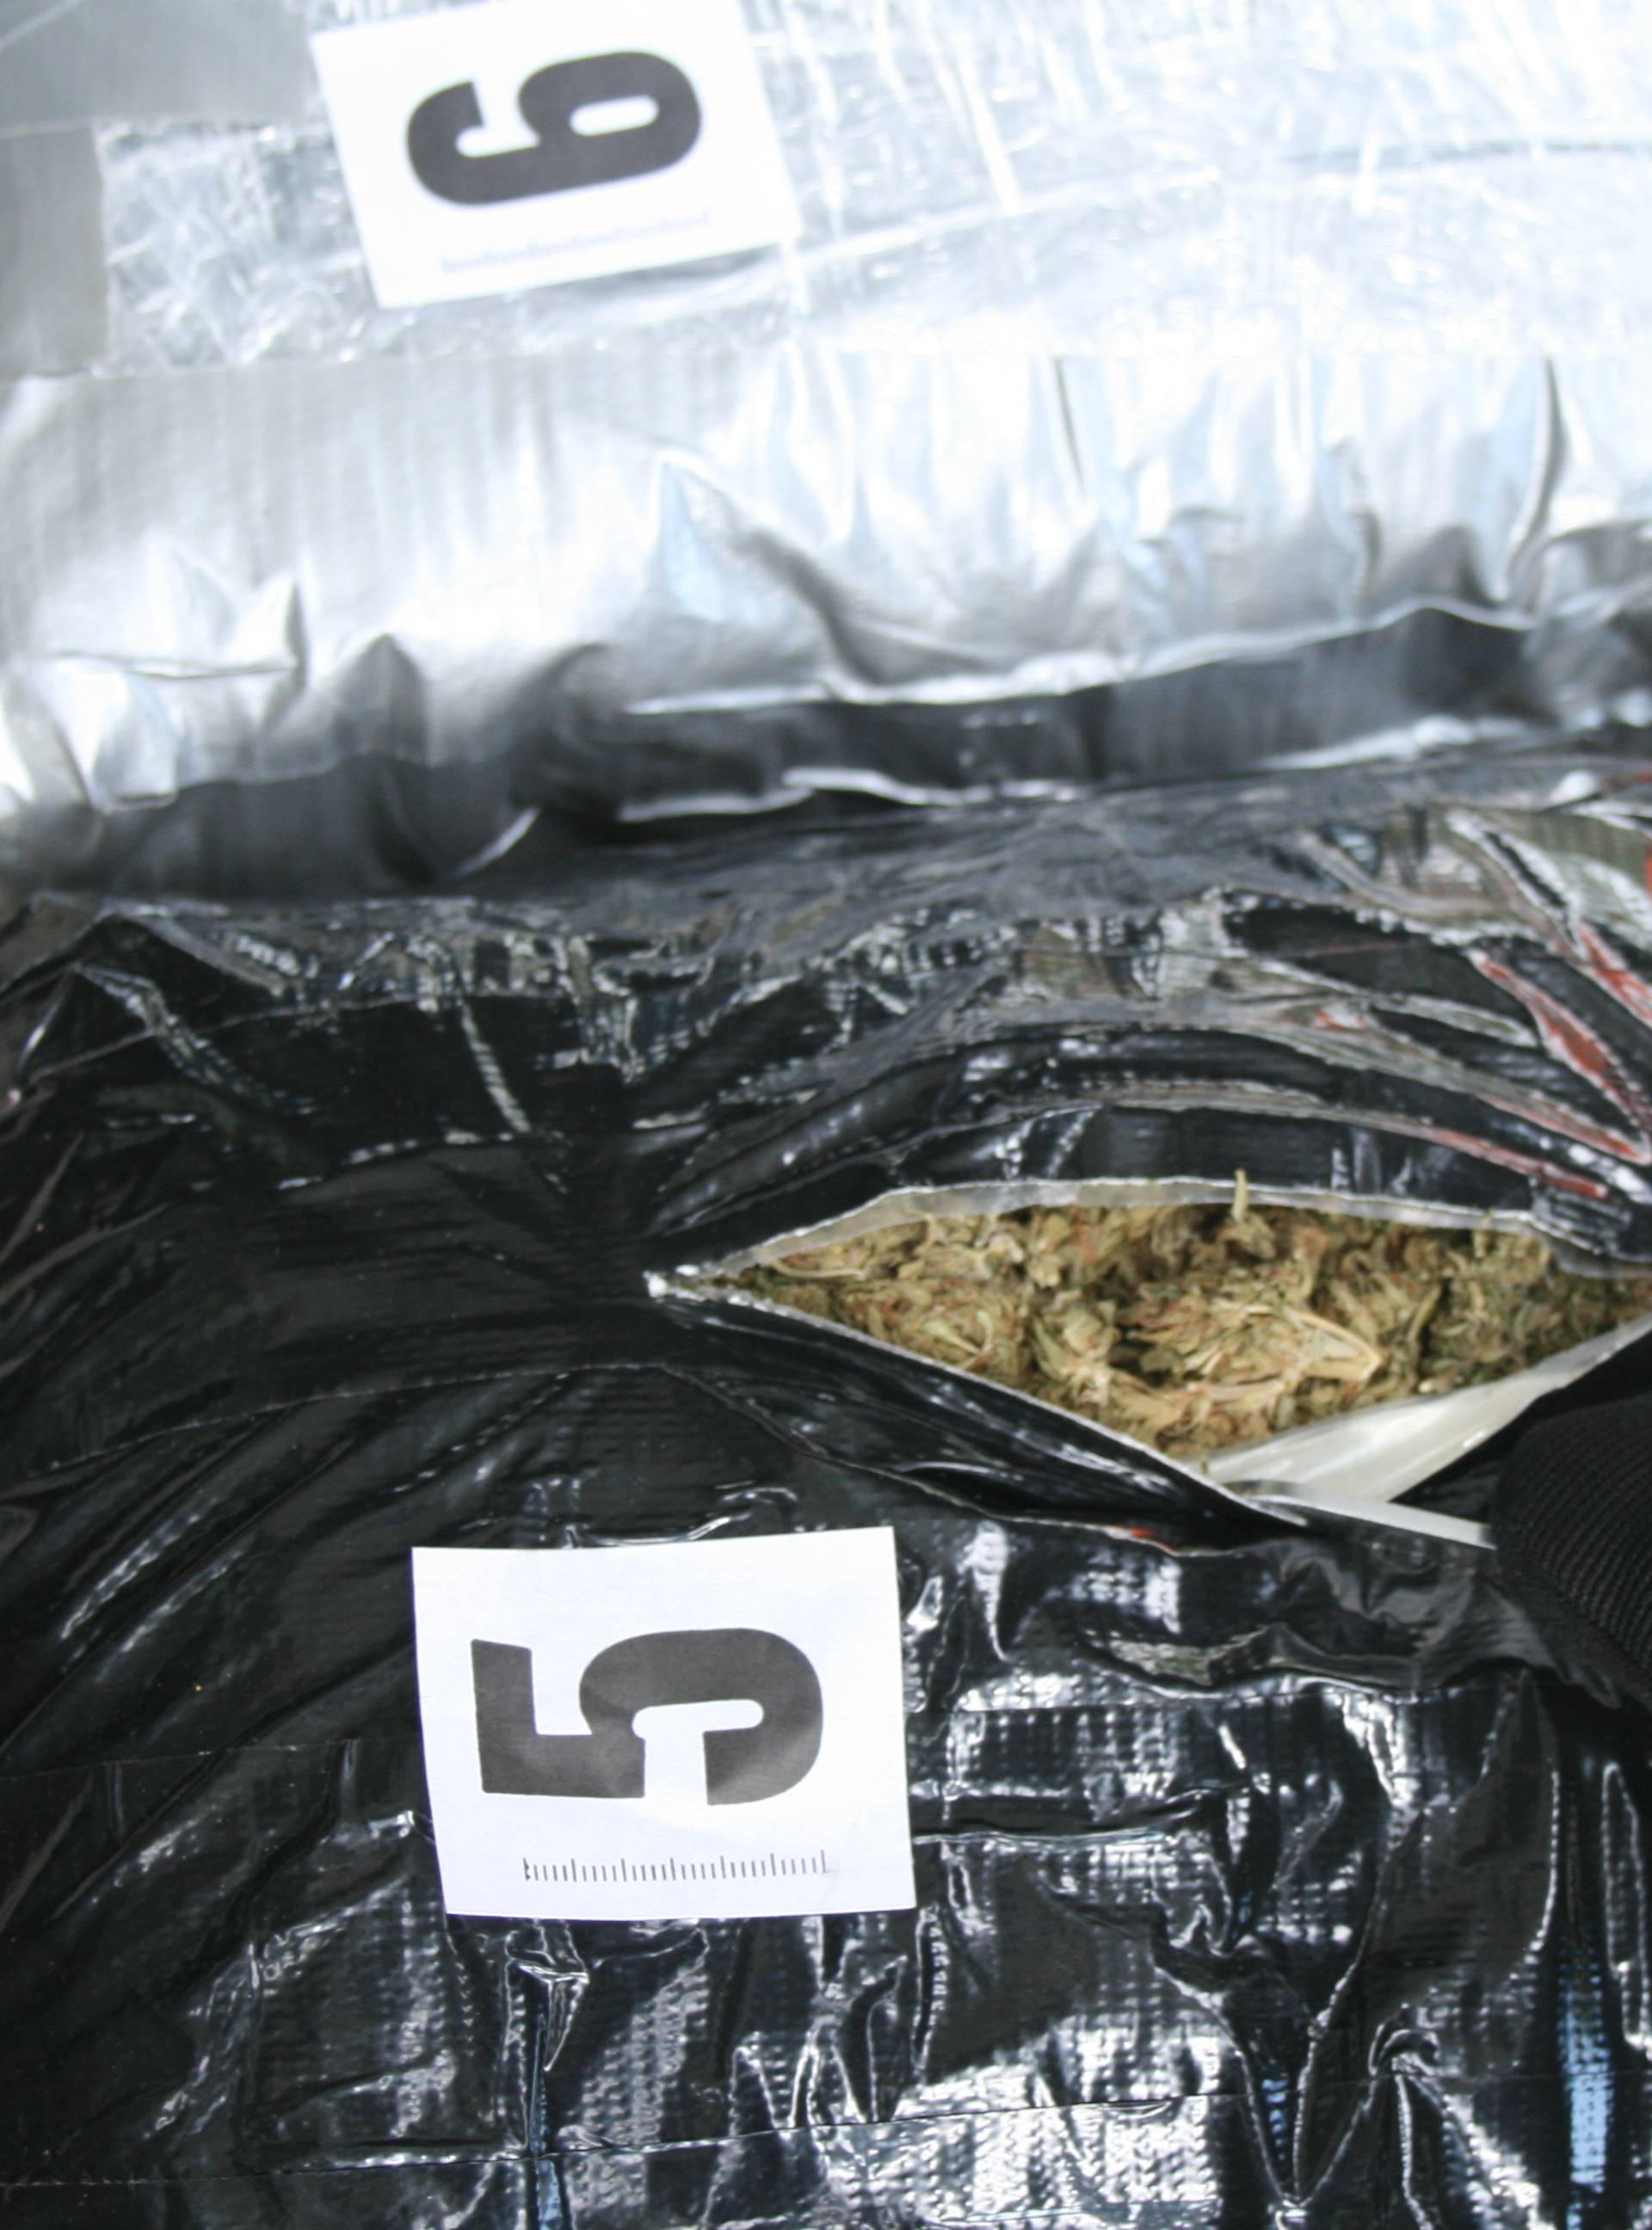 U autu 46-godišnje Crnogorke otkrili više od 15 kg marihuane